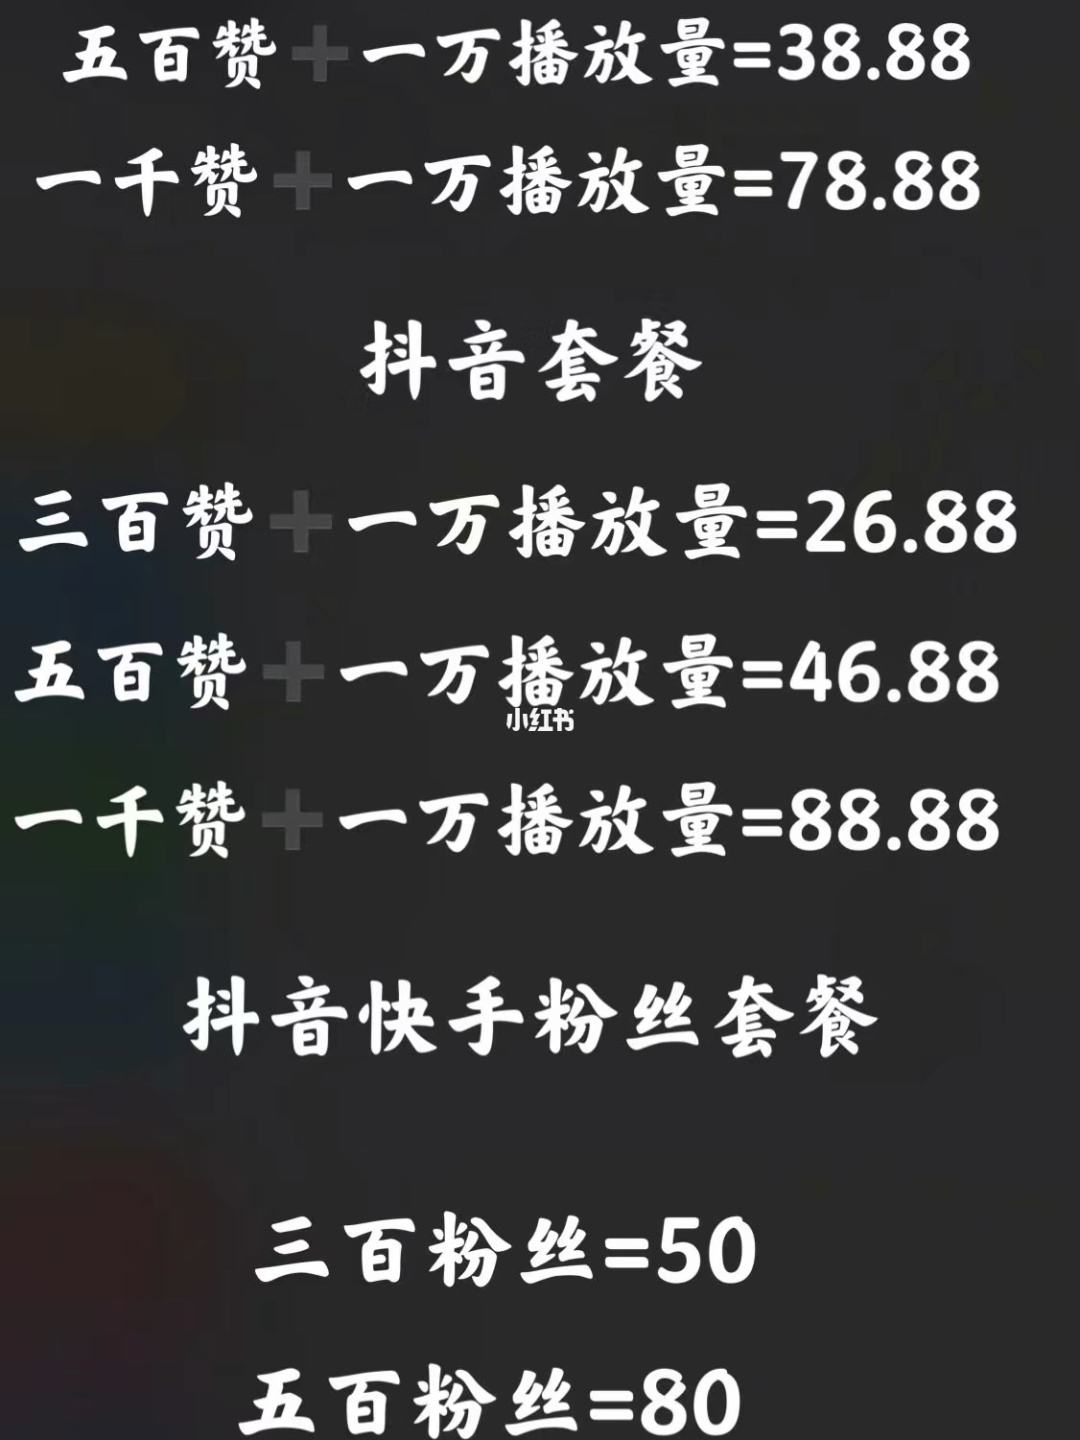 关于0.01元说说赞_梦想代刷网_快手业务小林代刷网的信息